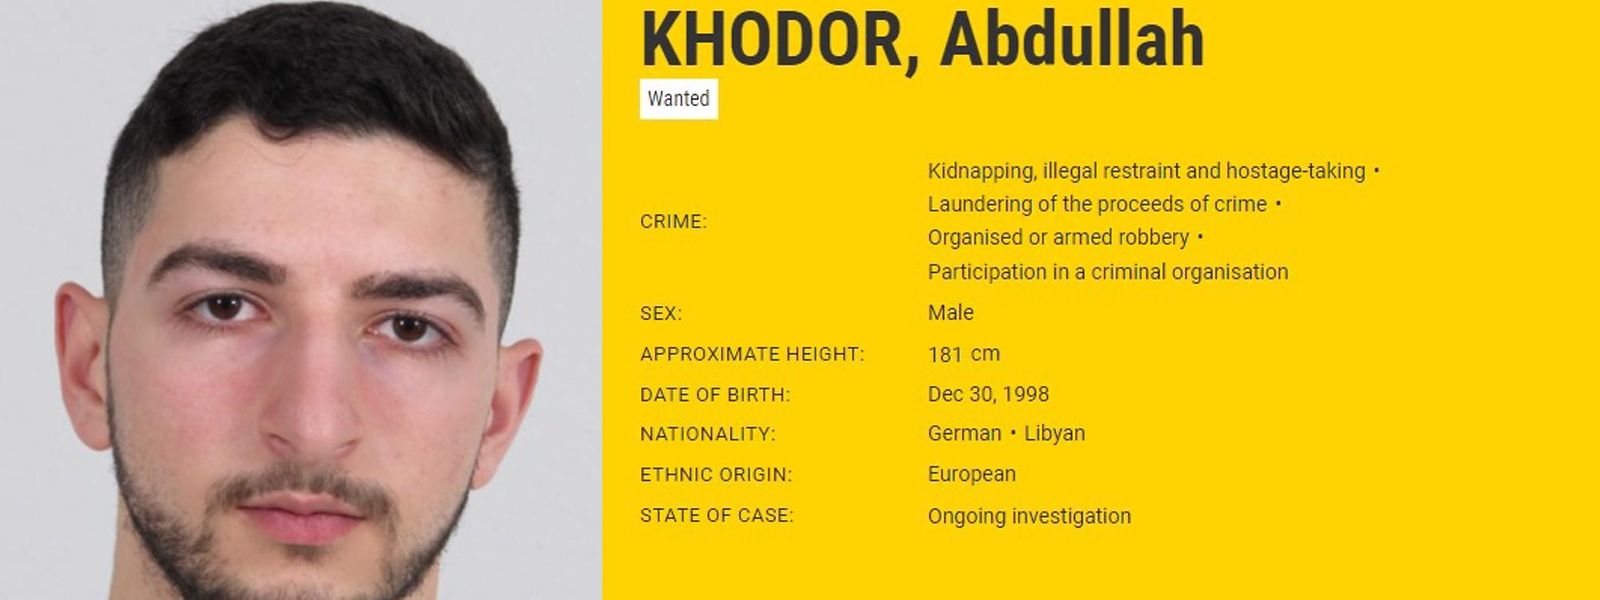 Khodor est recherché pour séquestration, blanchiment d'argent et participation à une organisation criminelle. 